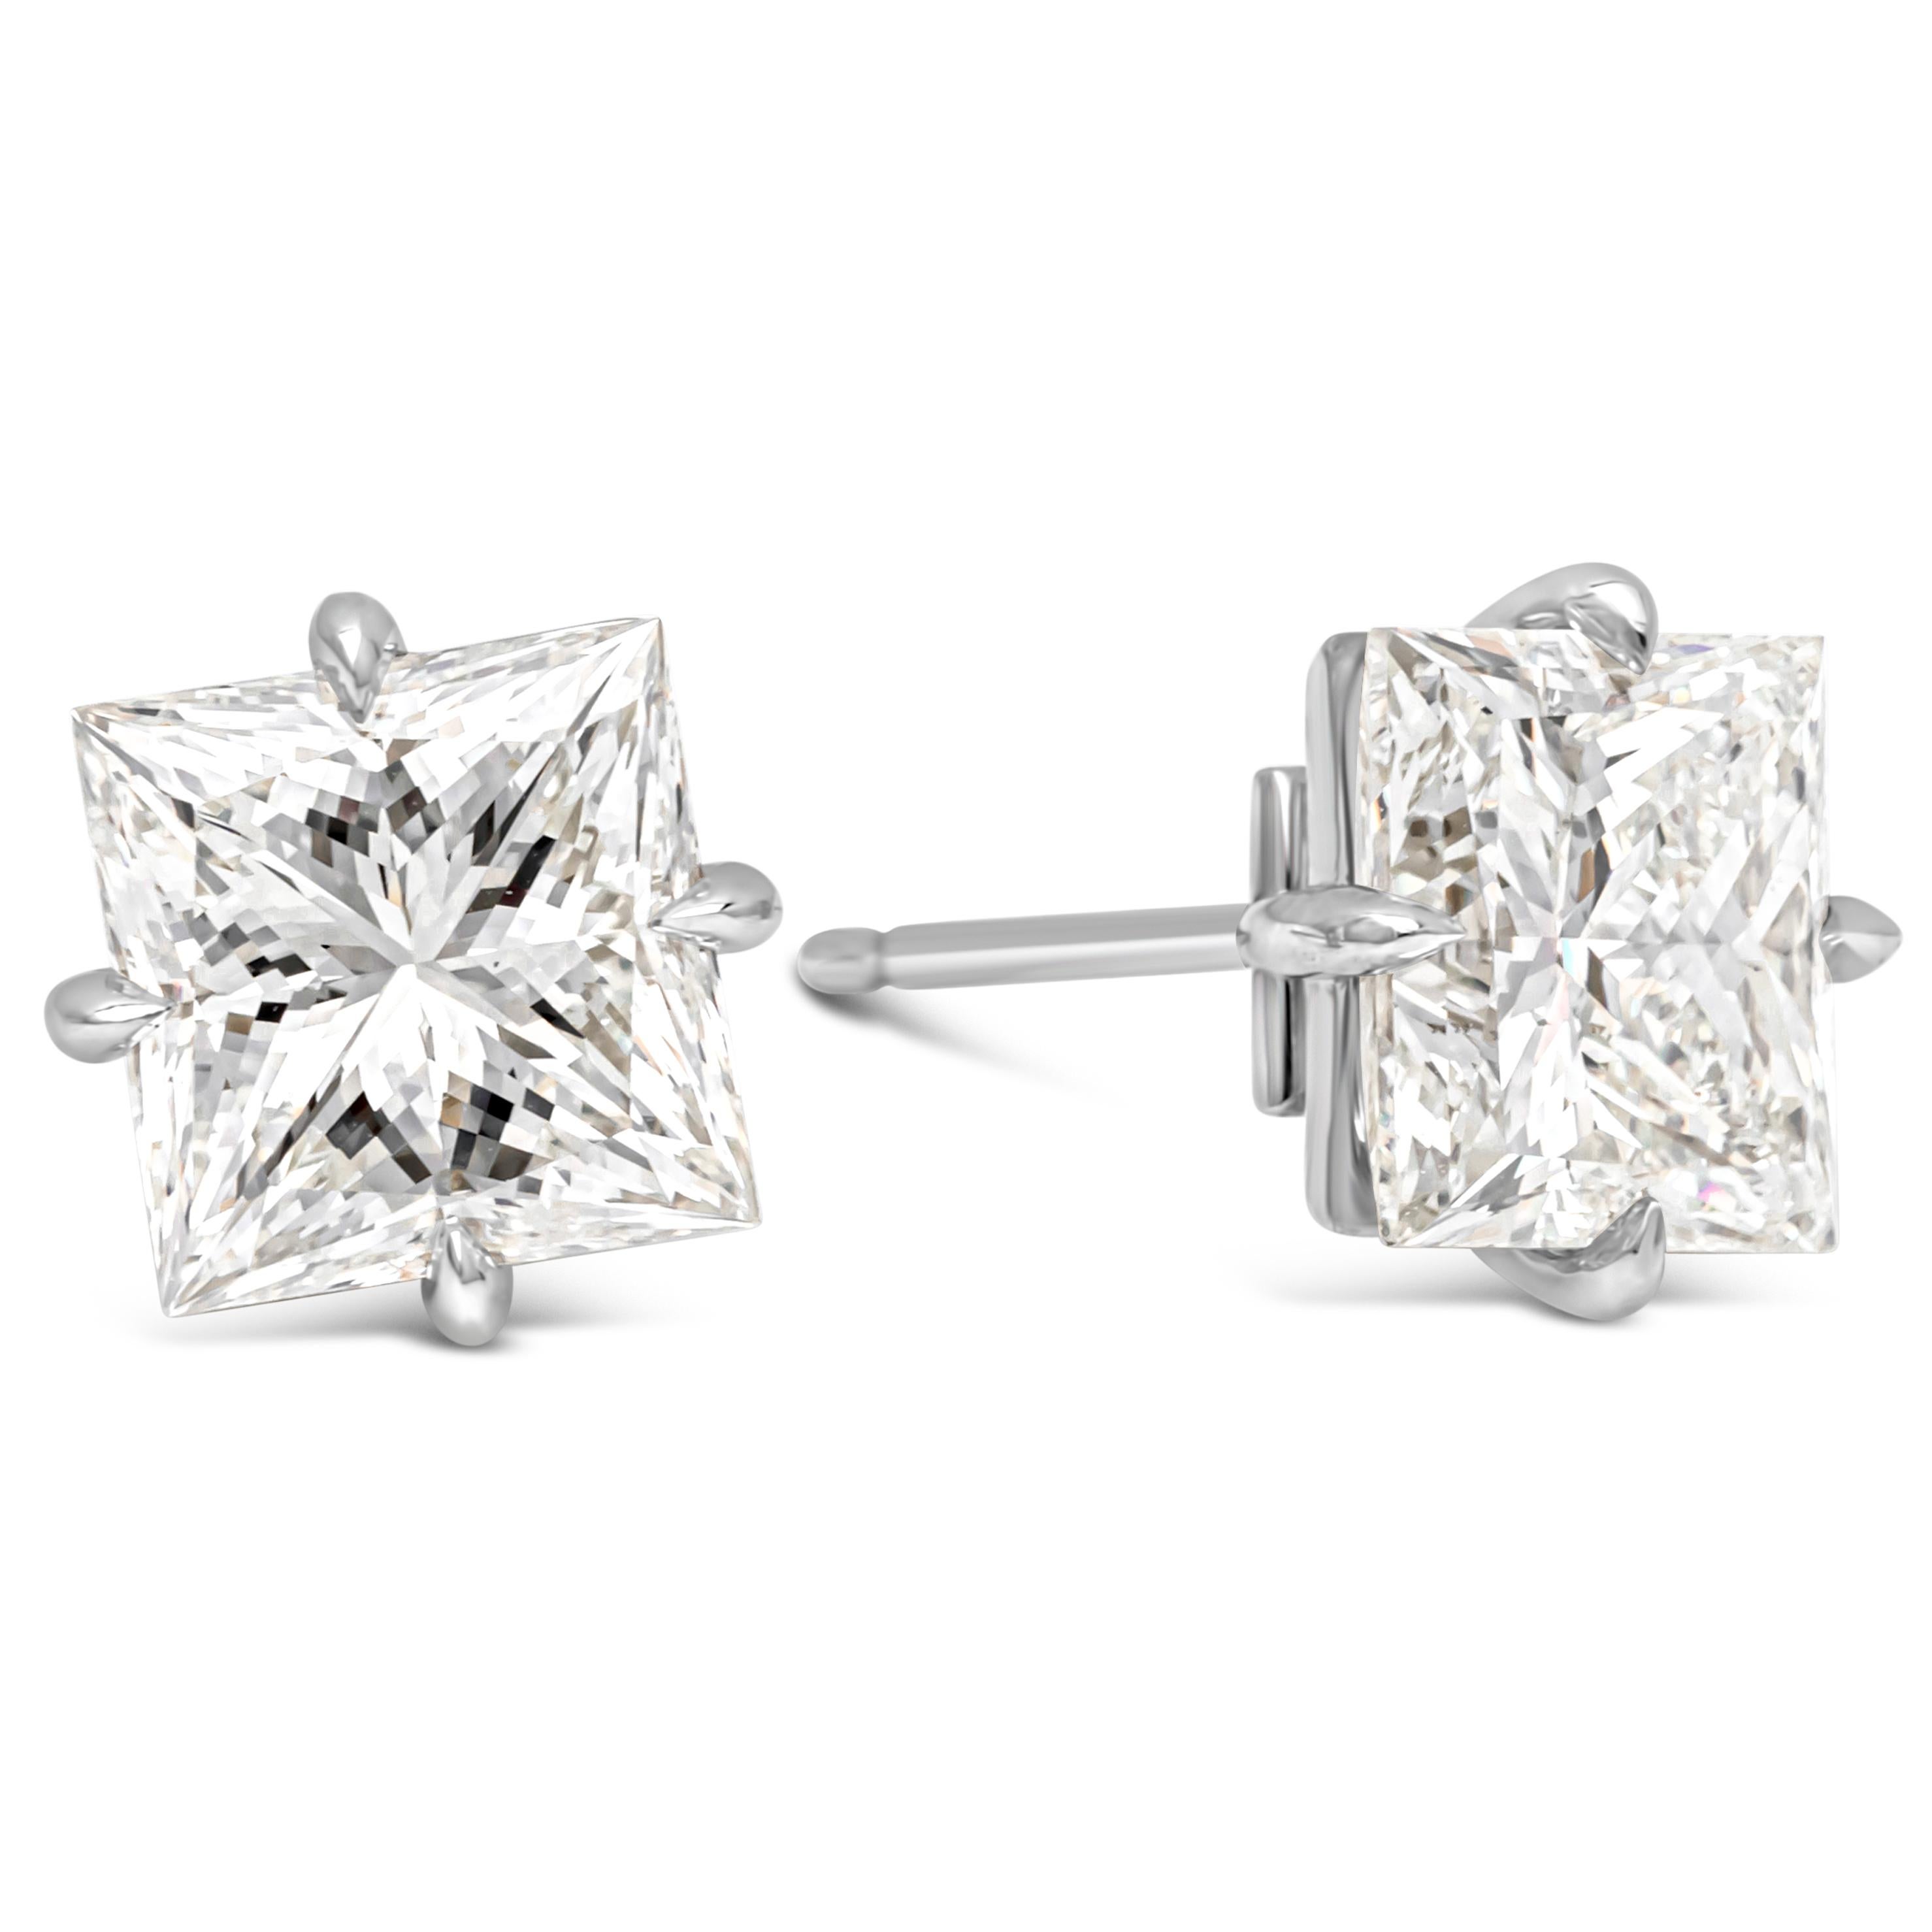 Elegantes, klassisches Paar Ohrstecker mit zwei luxuriösen Diamanten im Prinzessinnenschliff mit einem Gesamtgewicht von 6,07 Karat, zertifiziert von GIA als Farbe I und Reinheit SI1-VS1. Er ist in einer traditionellen Vier-Zacken-Fassung gefasst